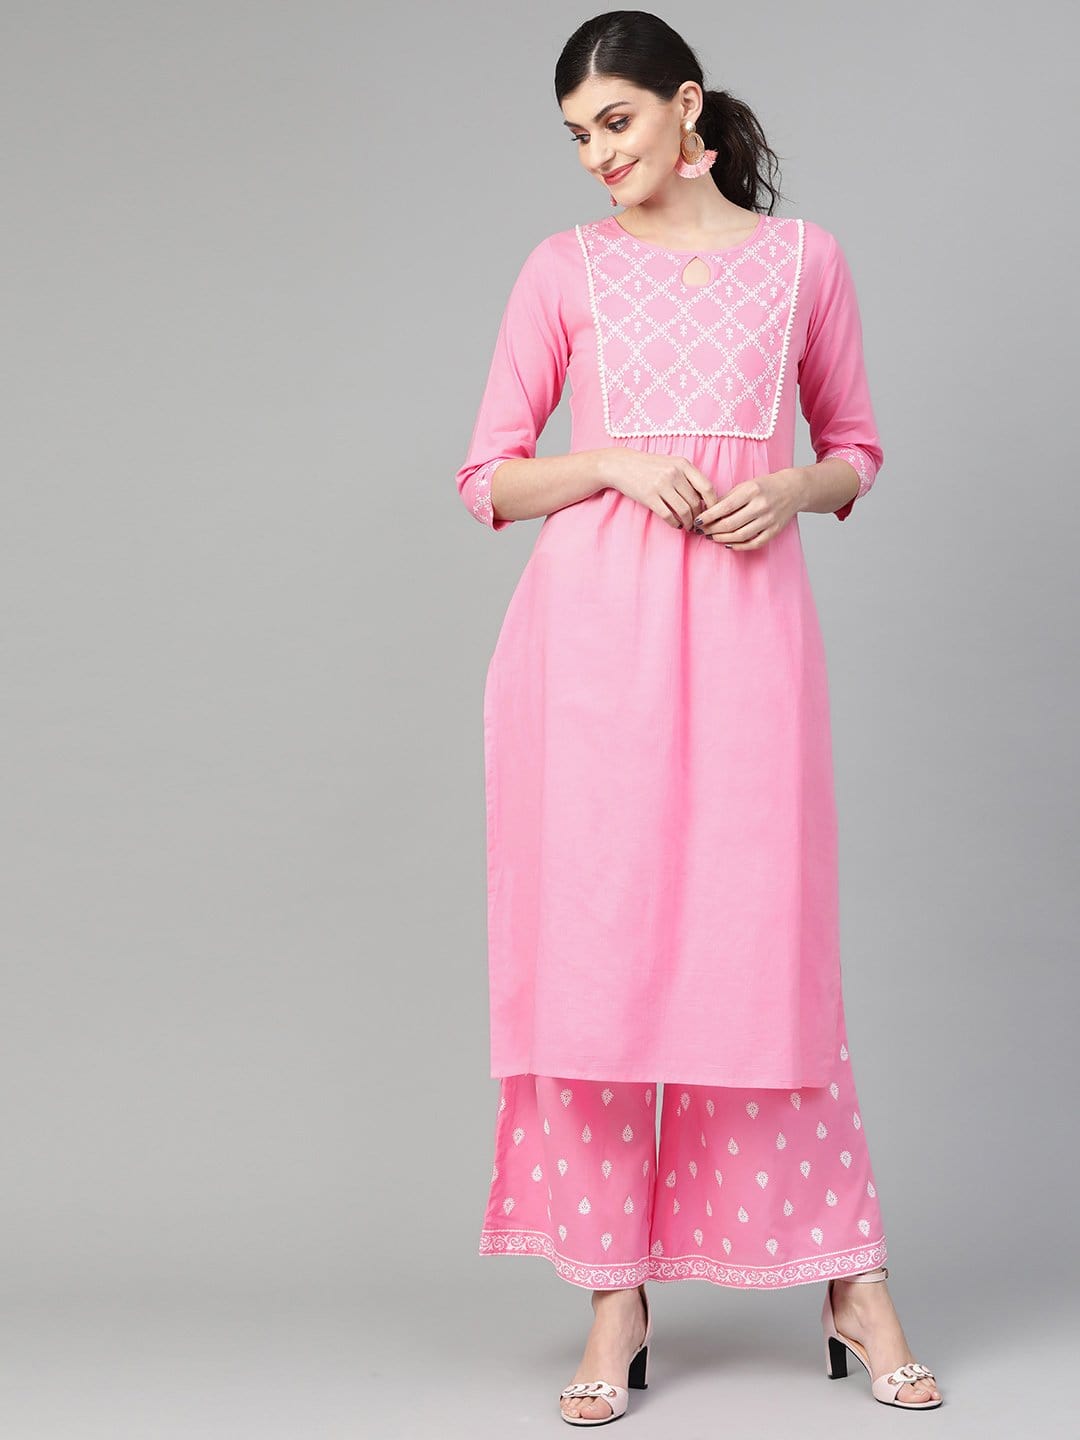 Women's Light Pink Khari Printed Straight Kurta  With Overall Printed Straight Palazzo - Varanga